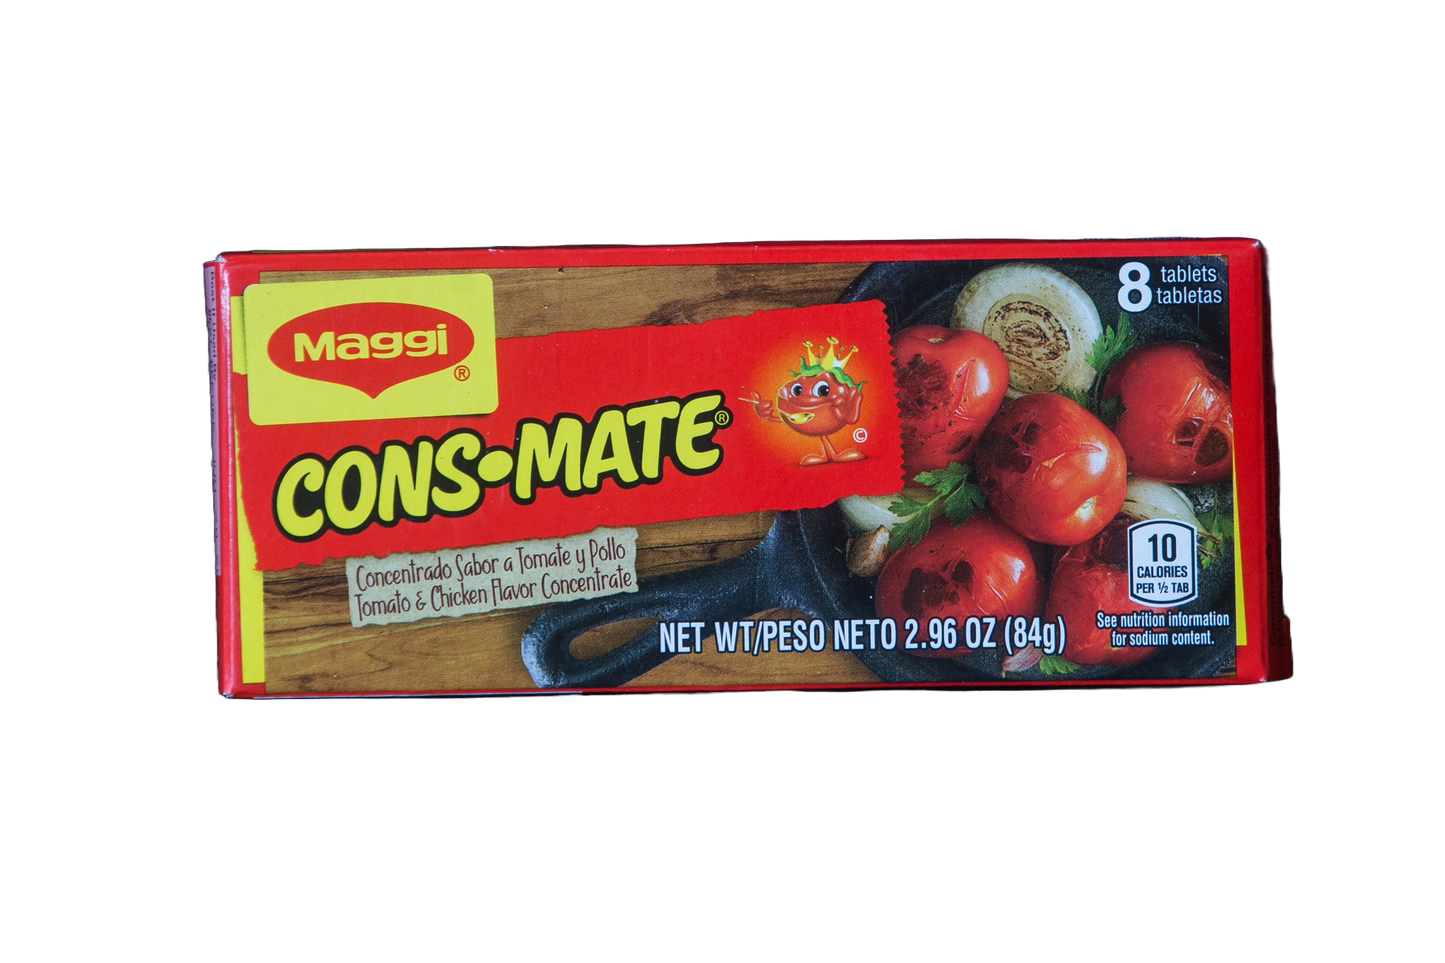 Maggi Consmate Tomato And Chicken Flavor Concentrate, 2.6 oz